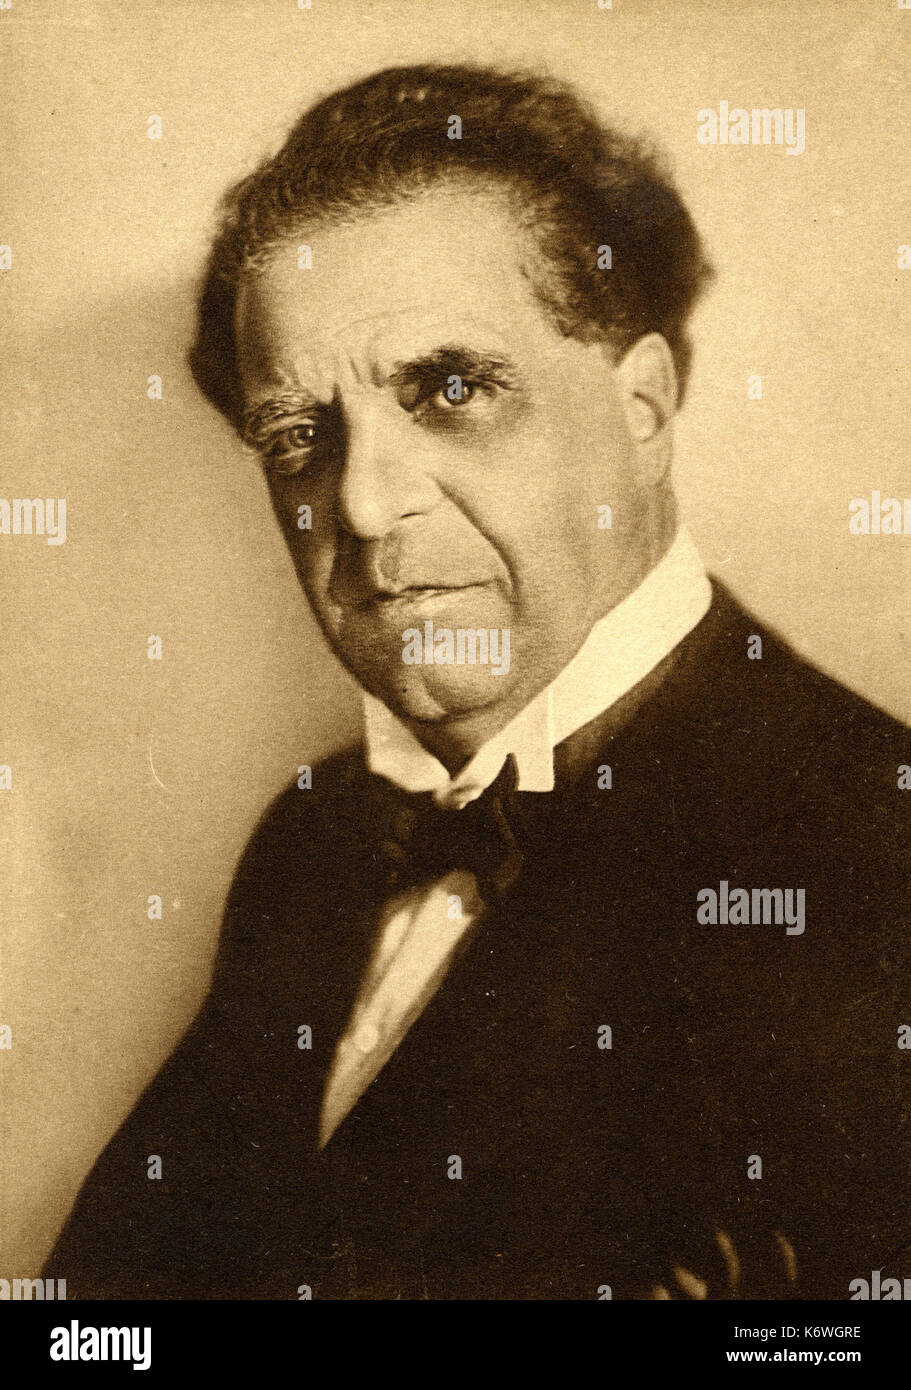 Pietro Mascagni Compositor Italiano 1863 1945 Fotografia De Stock Alamy